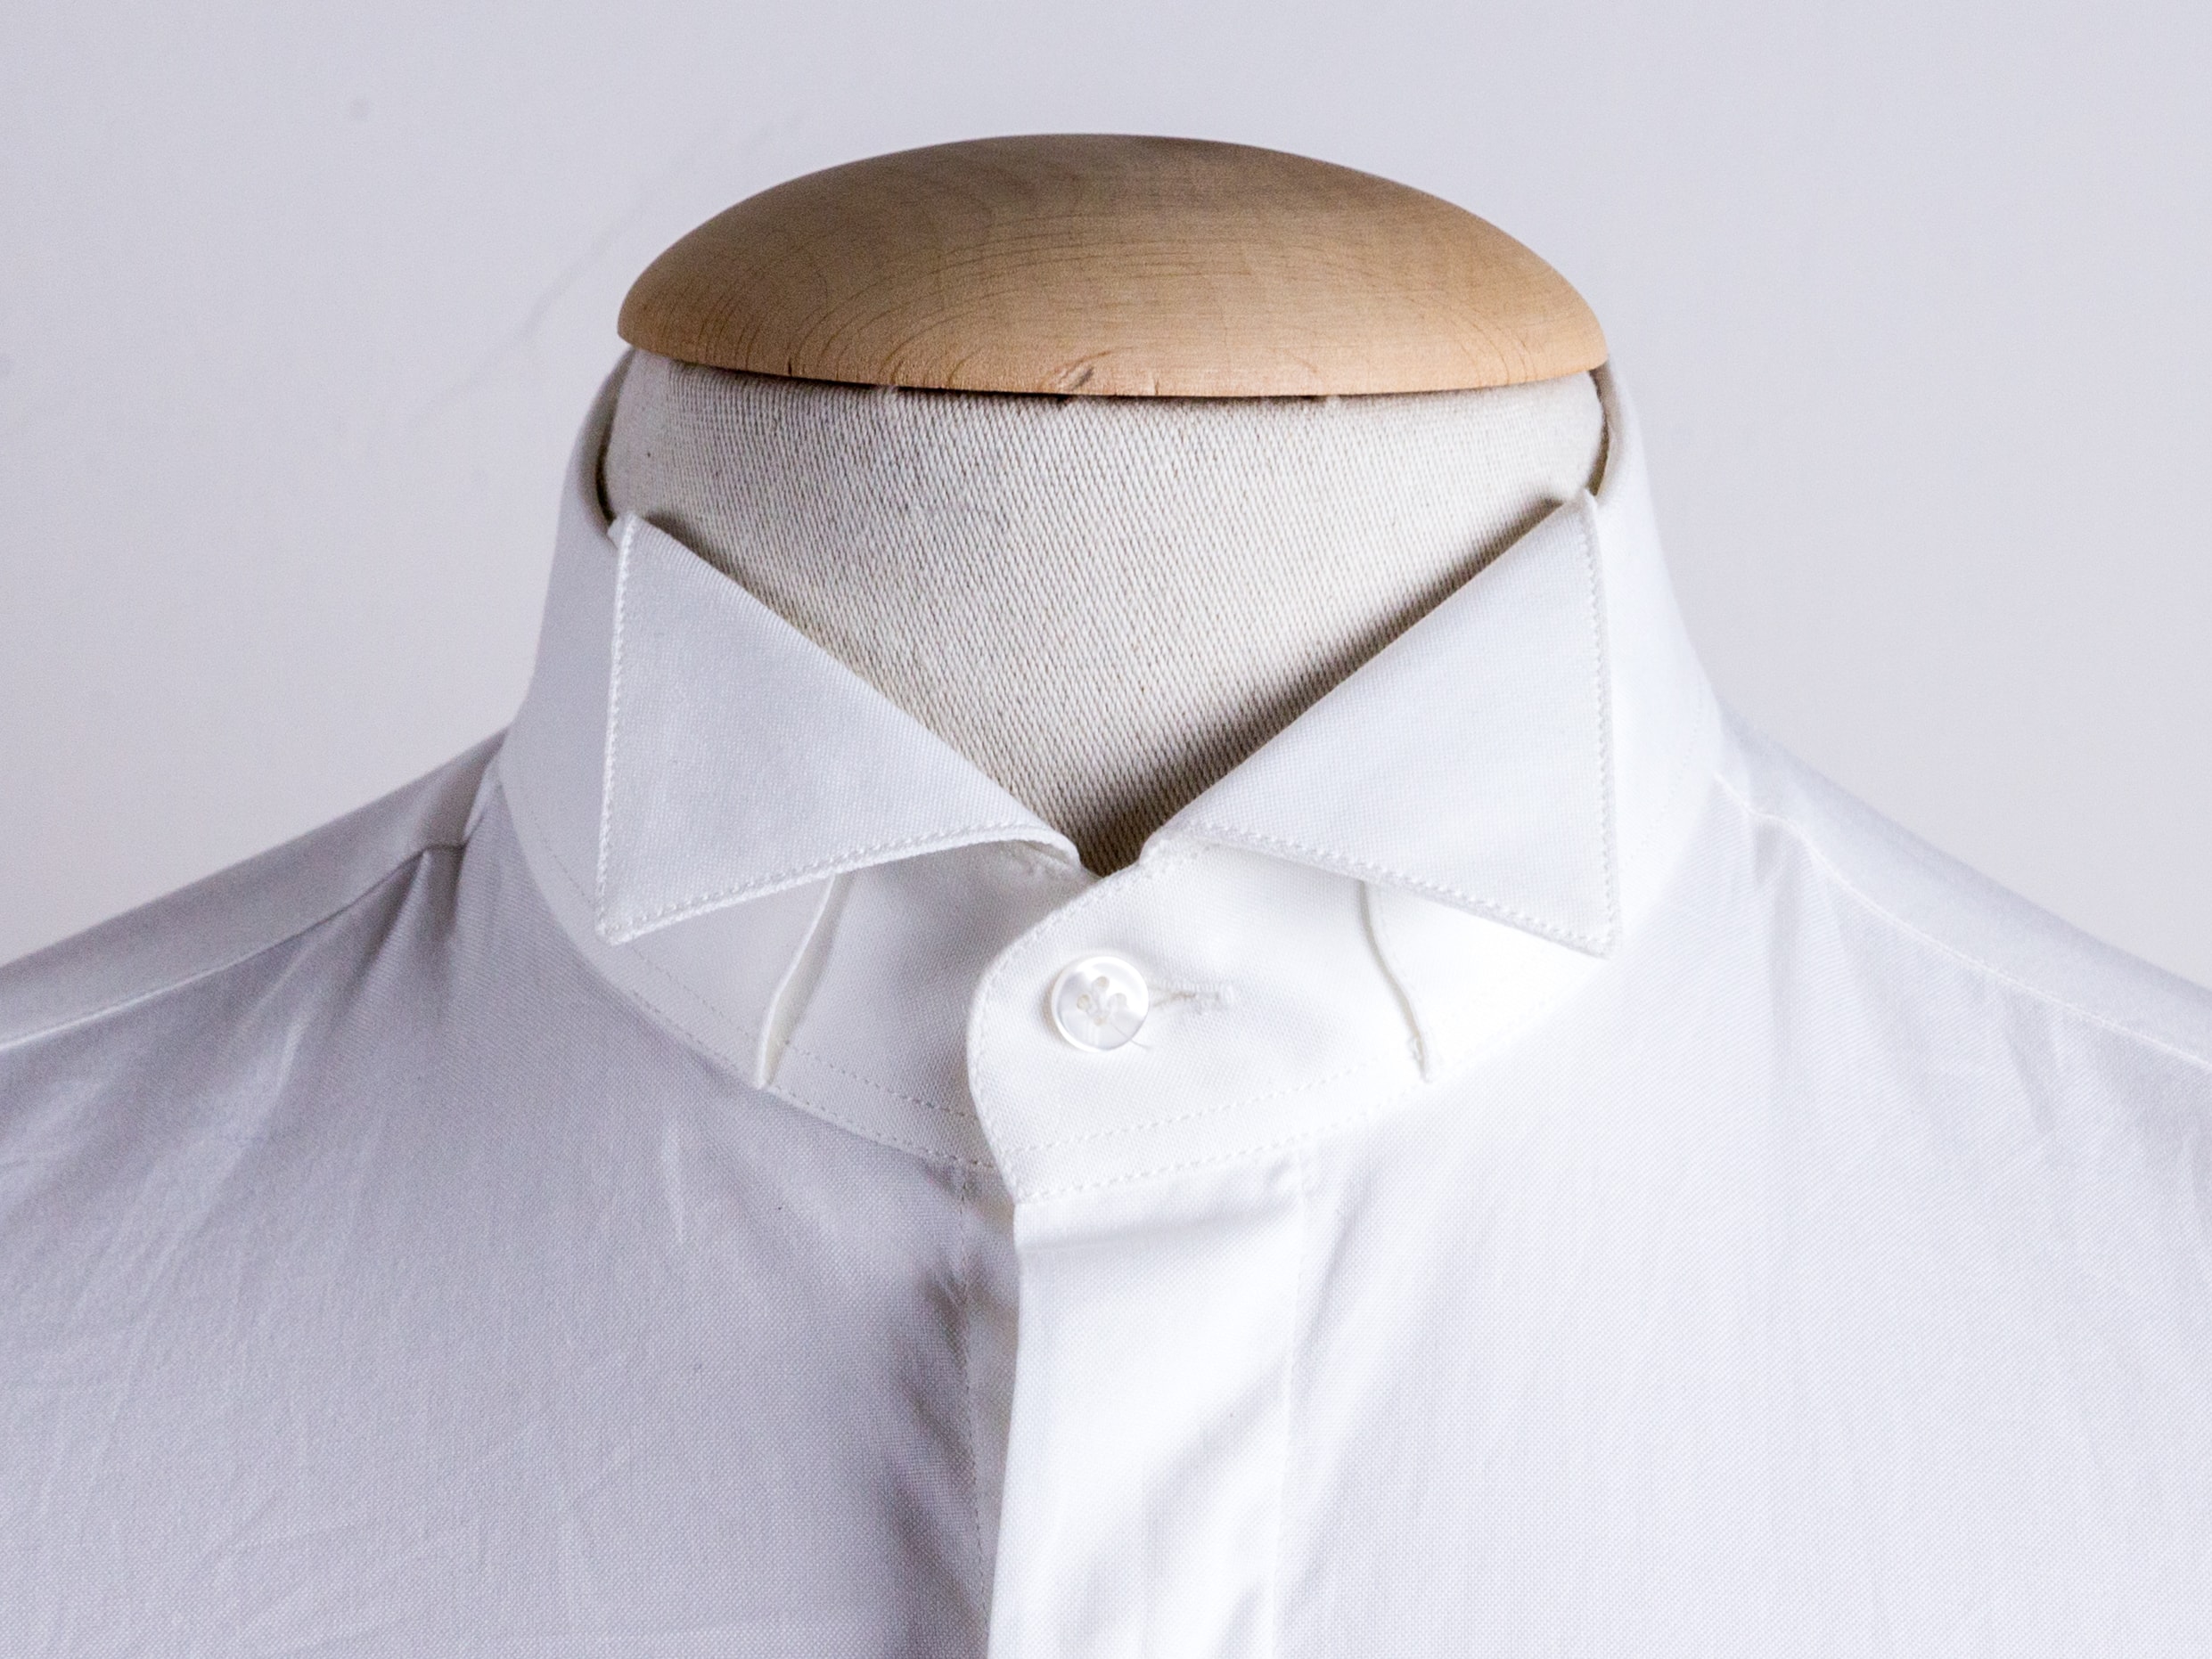 Col de chemise: le cassé, adapté aux smokings